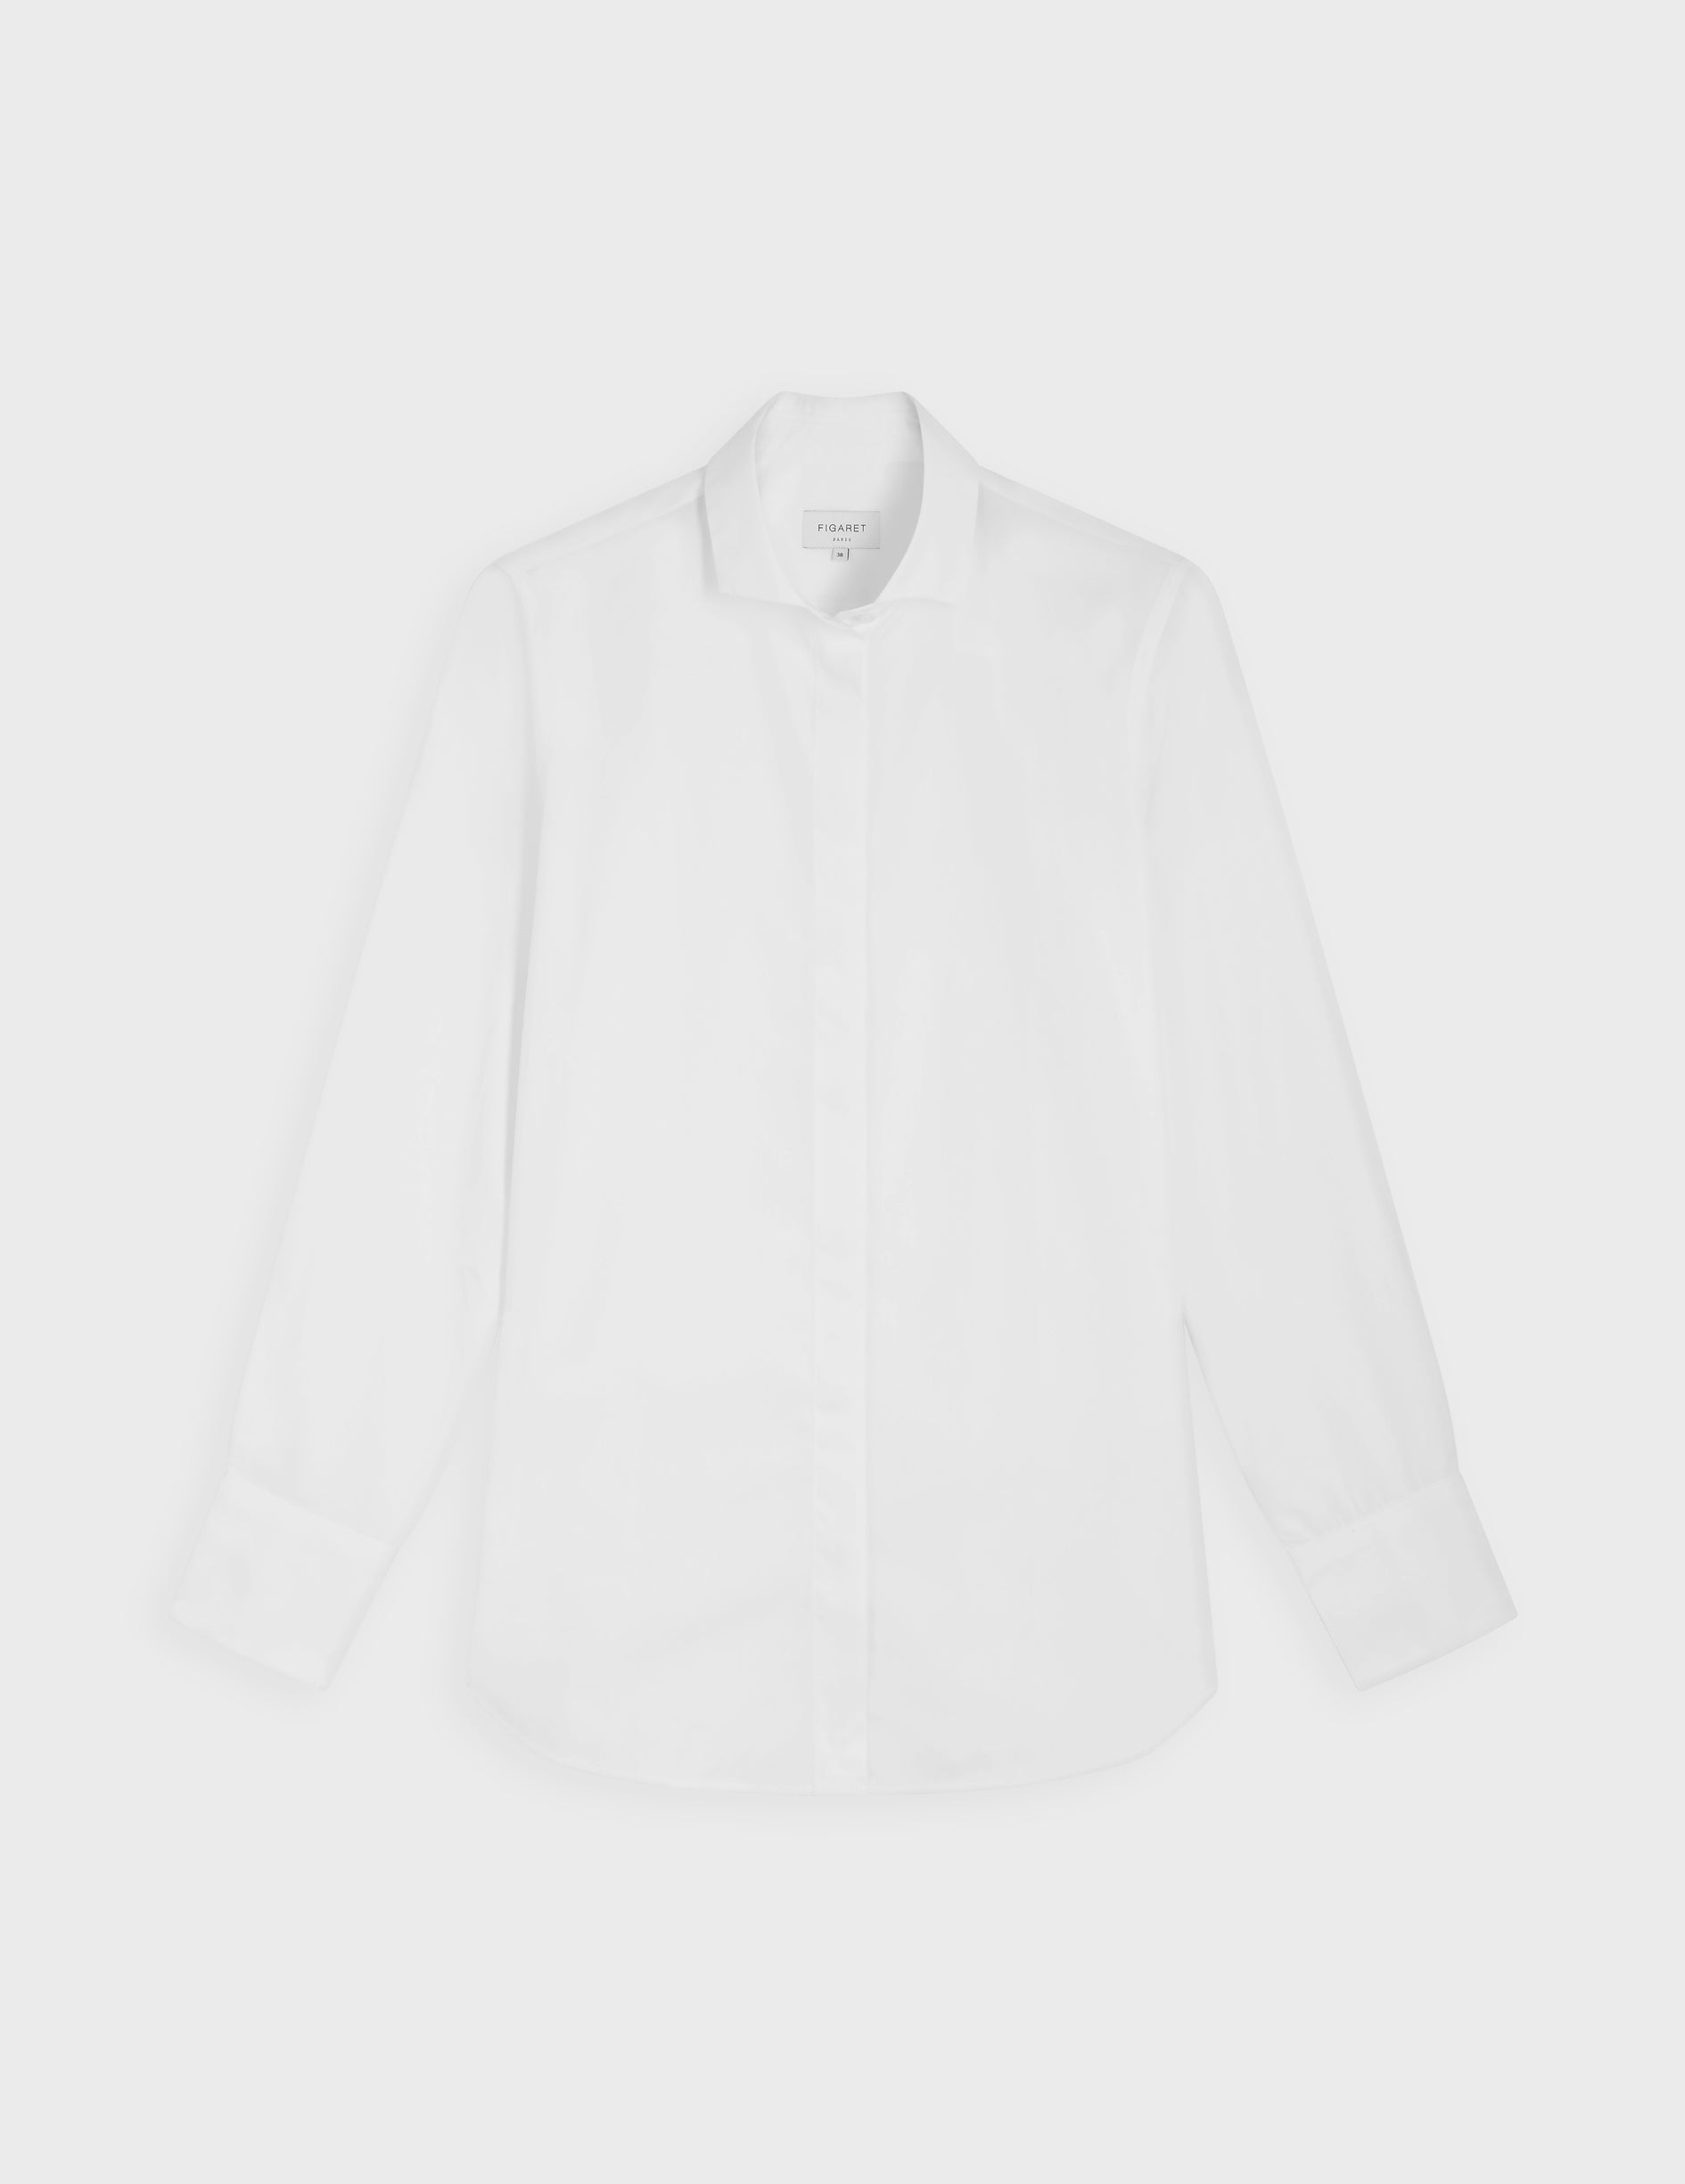 Caroline white shirt - Poplin